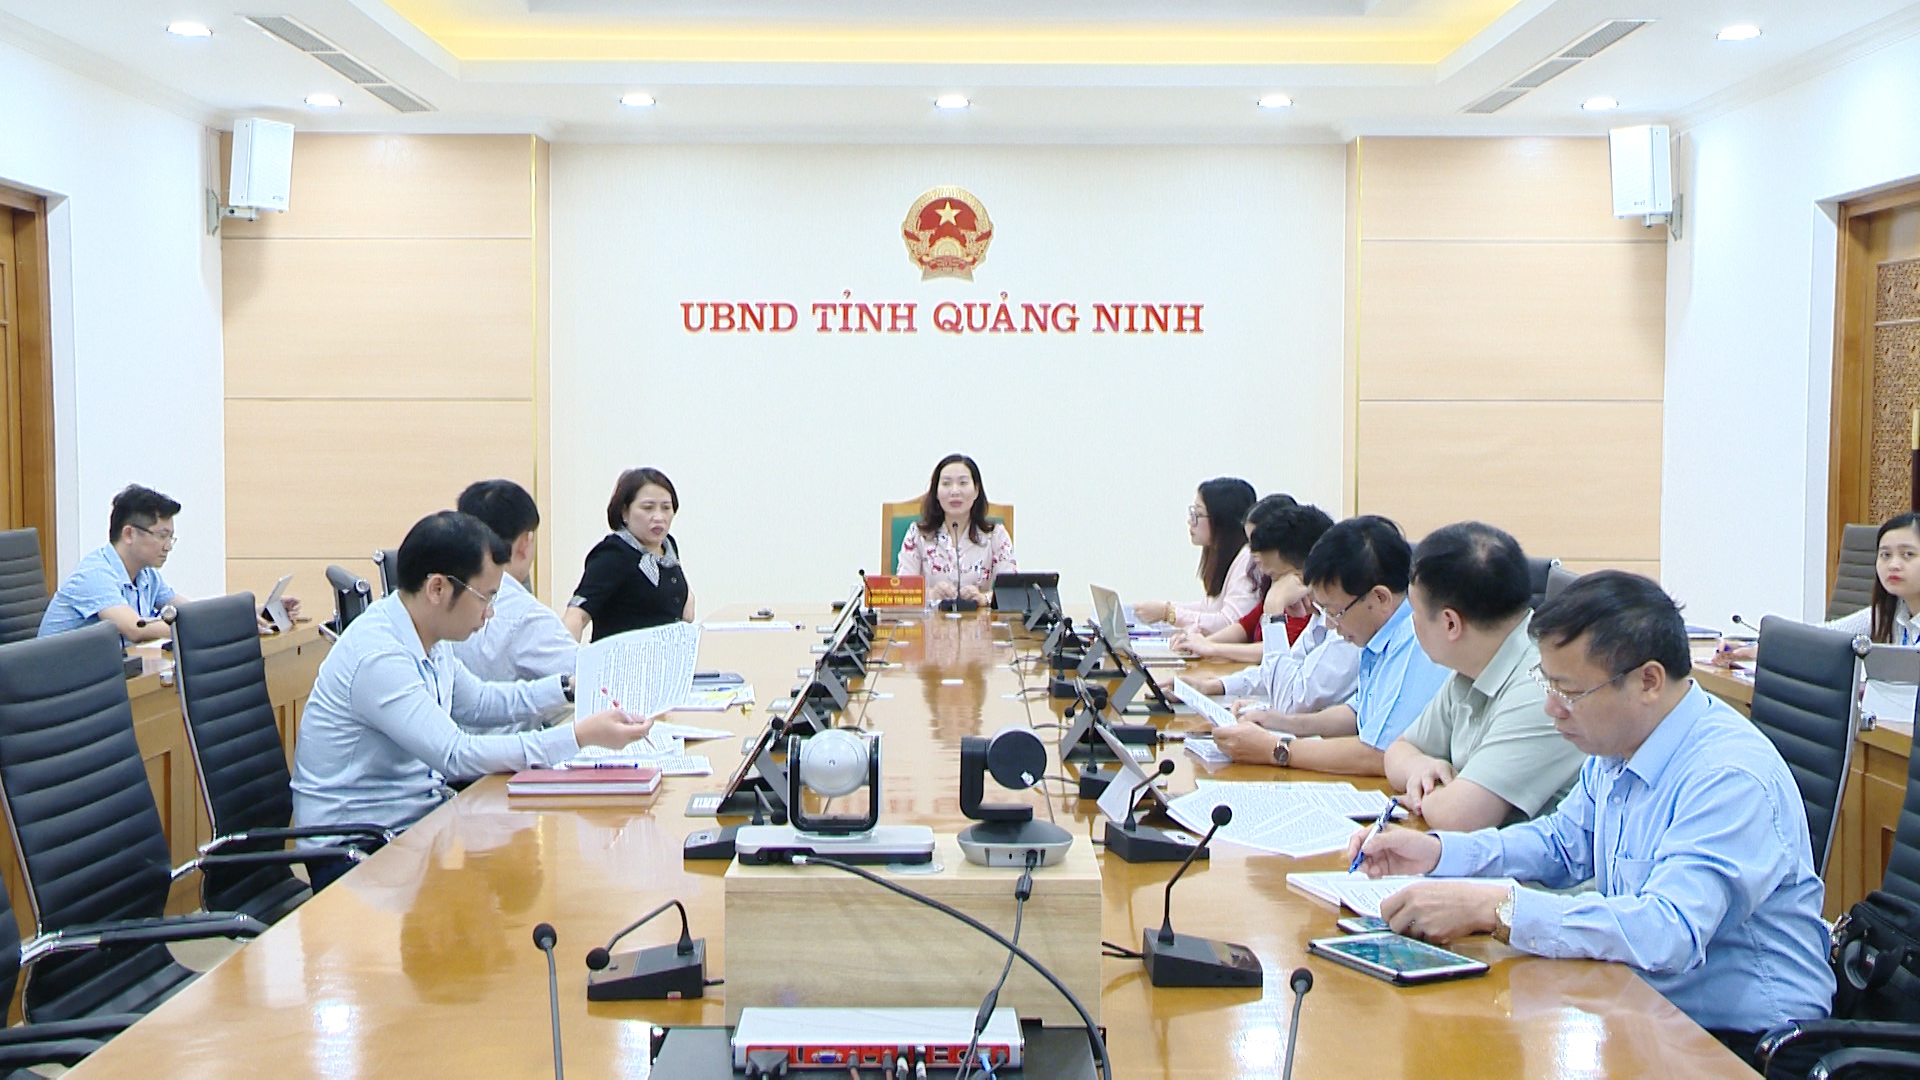 Đồng chí Nguyễn Thị Hạnh, Phó chủ tịch UBND tỉnh phát biểu kết luận hội nghị